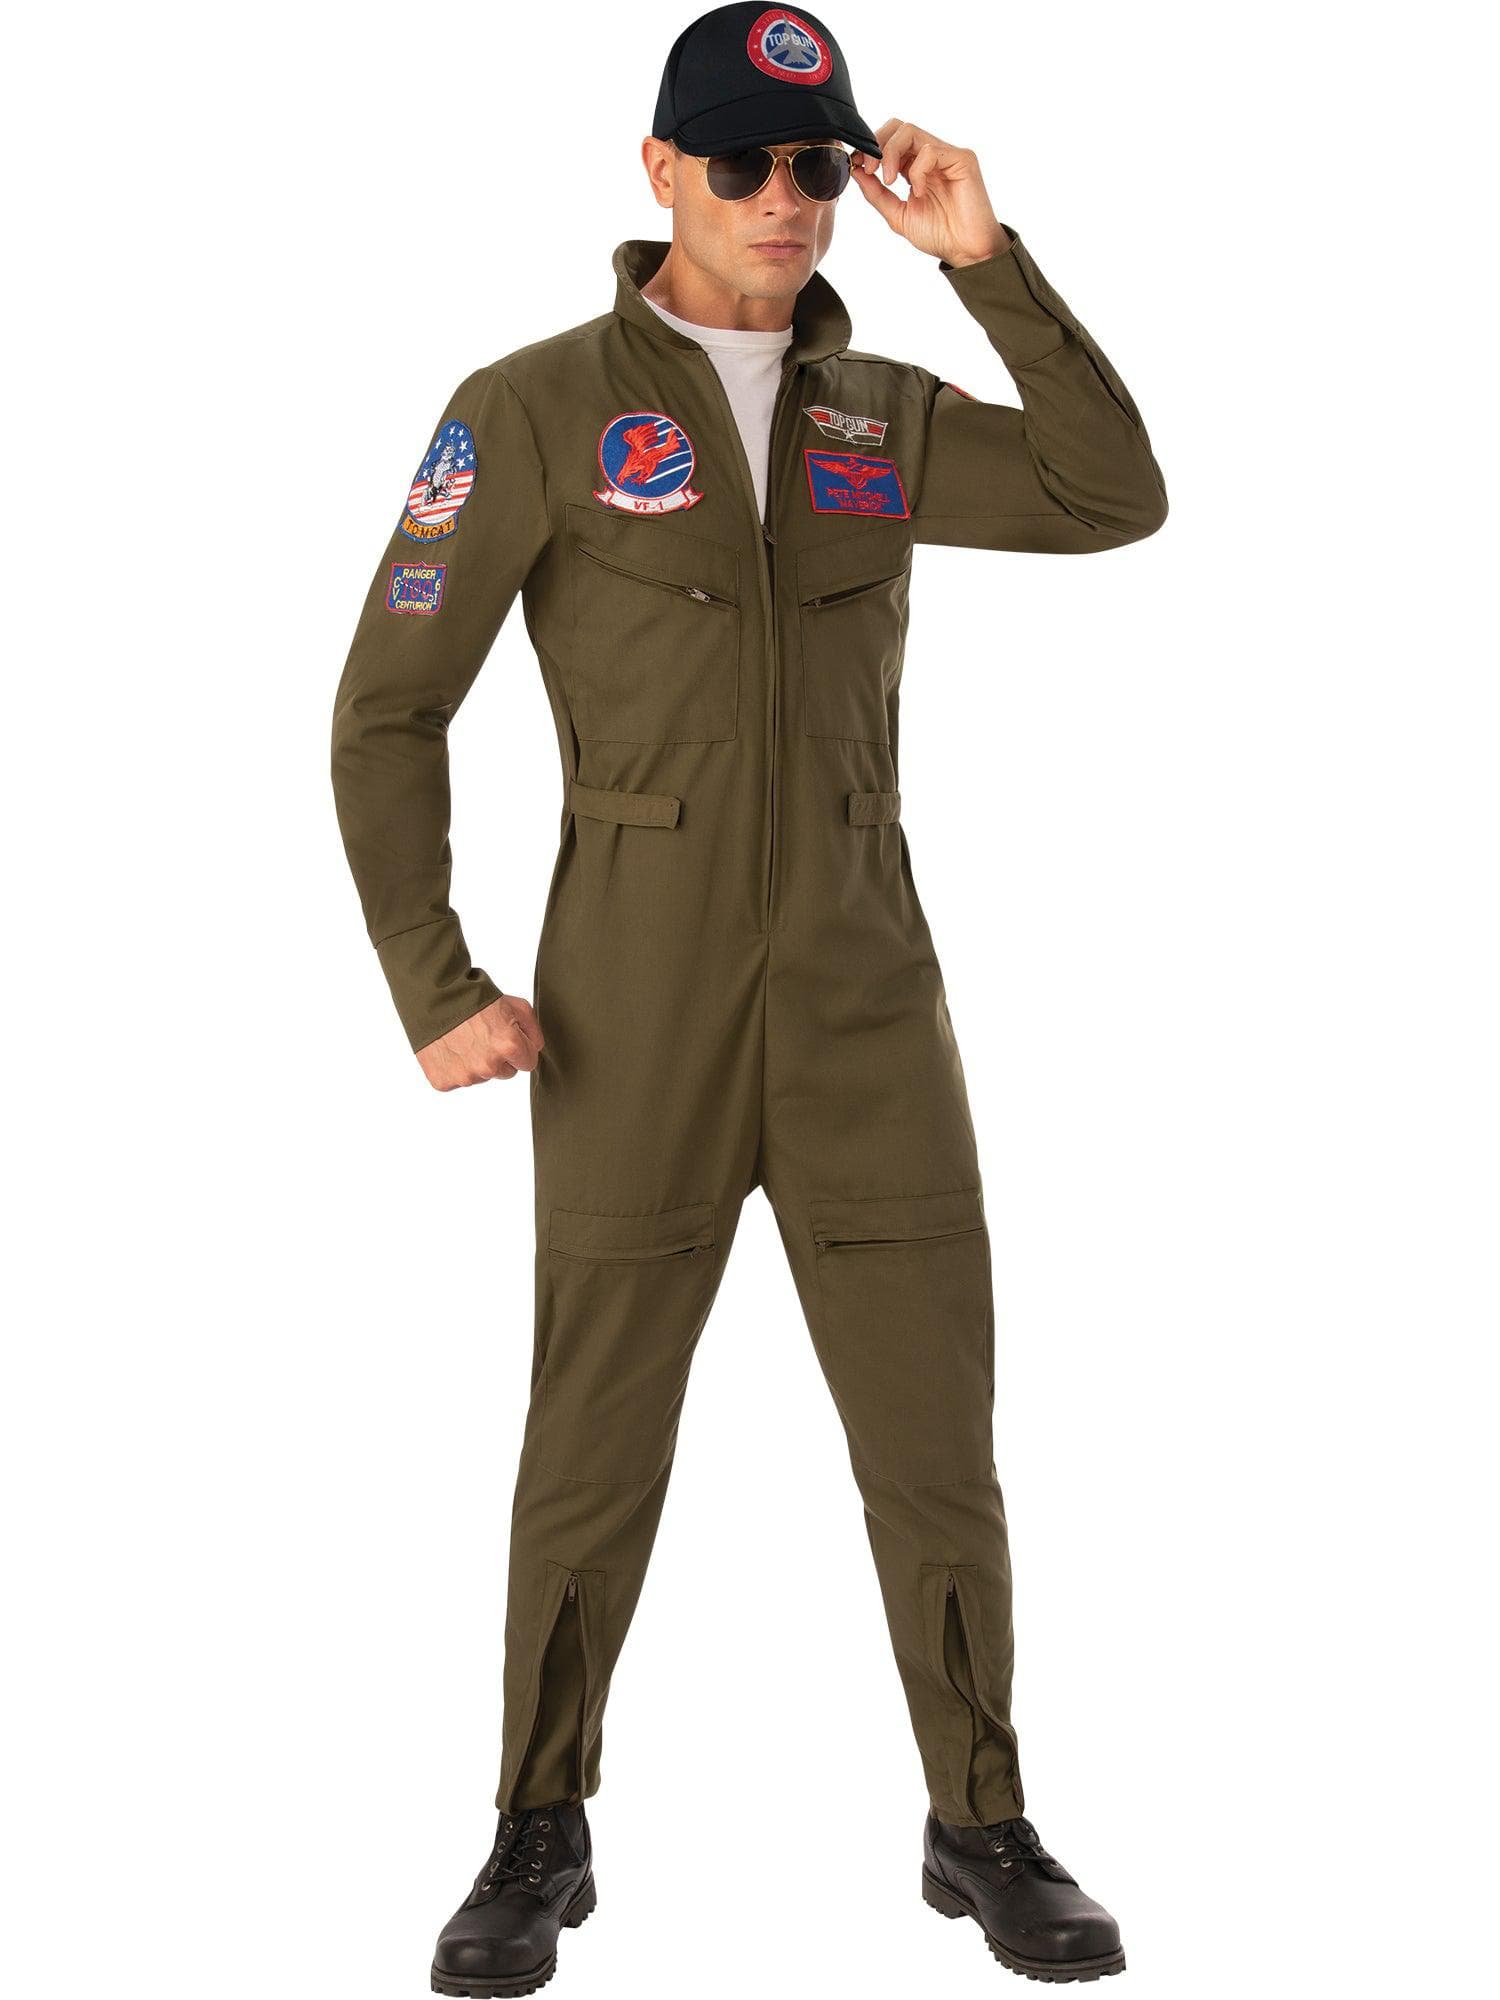 Adult Top Gun Deluxe Costume - costumes.com